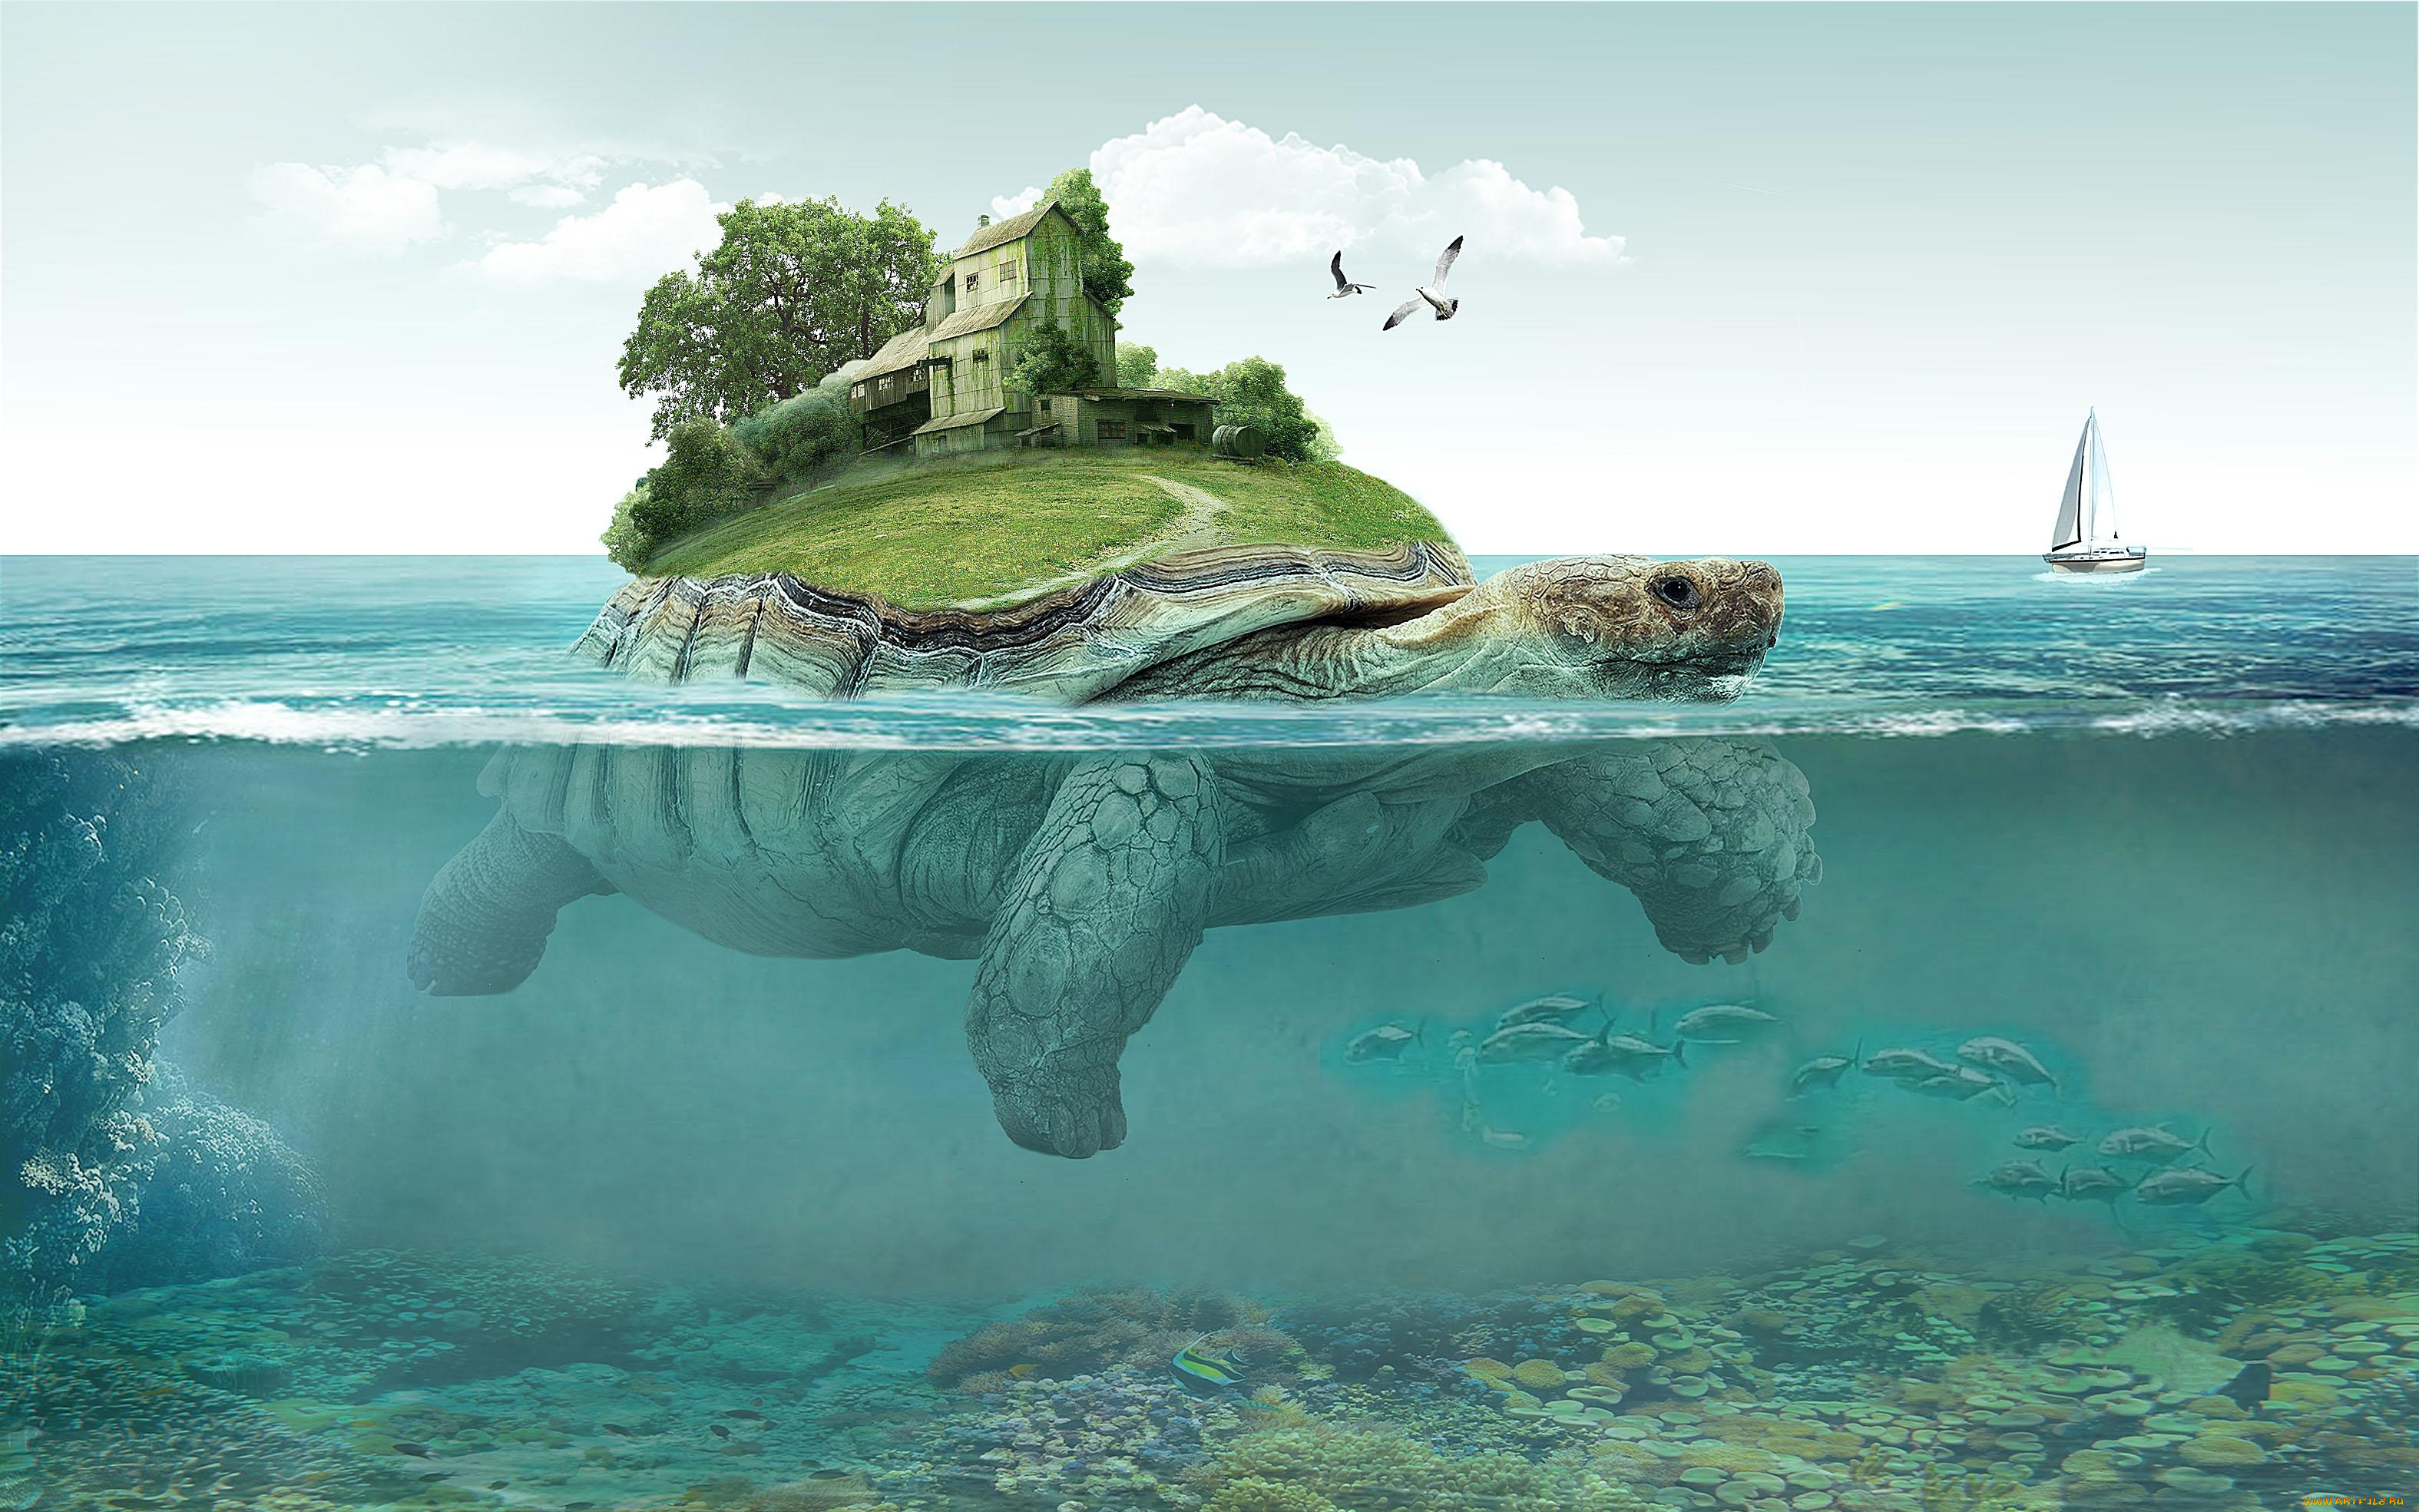 фэнтези, фотоарт, черепаха, монстр, вода, огромная, дом, остров, море, океан, оазис, плывёт